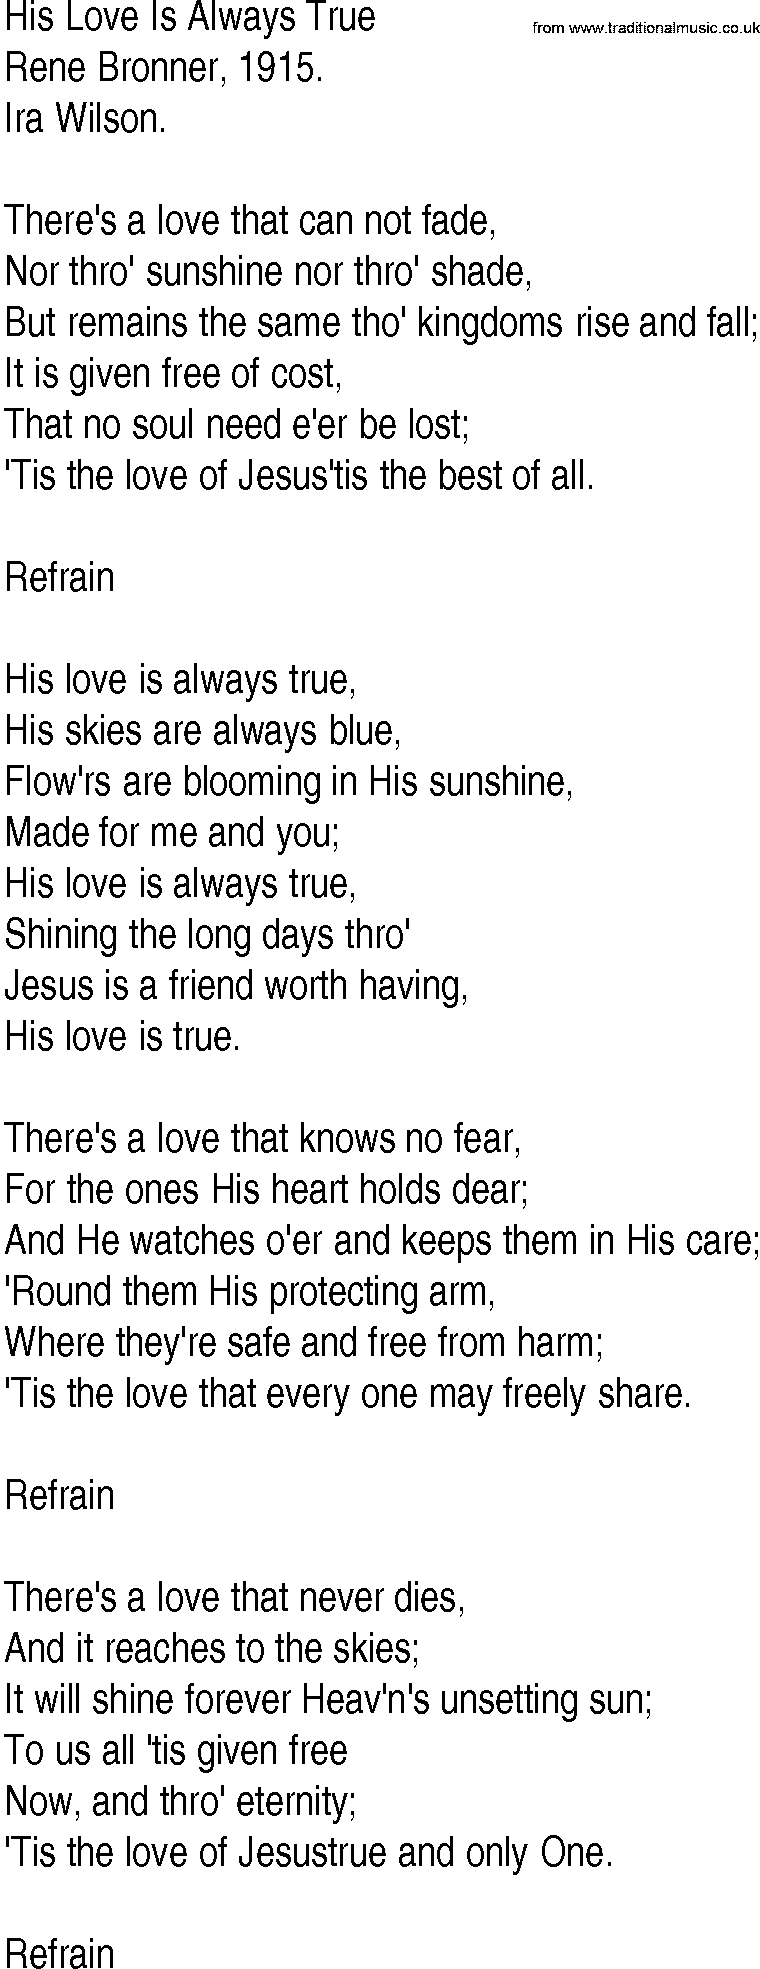 Hymn and Gospel Song: His Love Is Always True by Rene Bronner lyrics